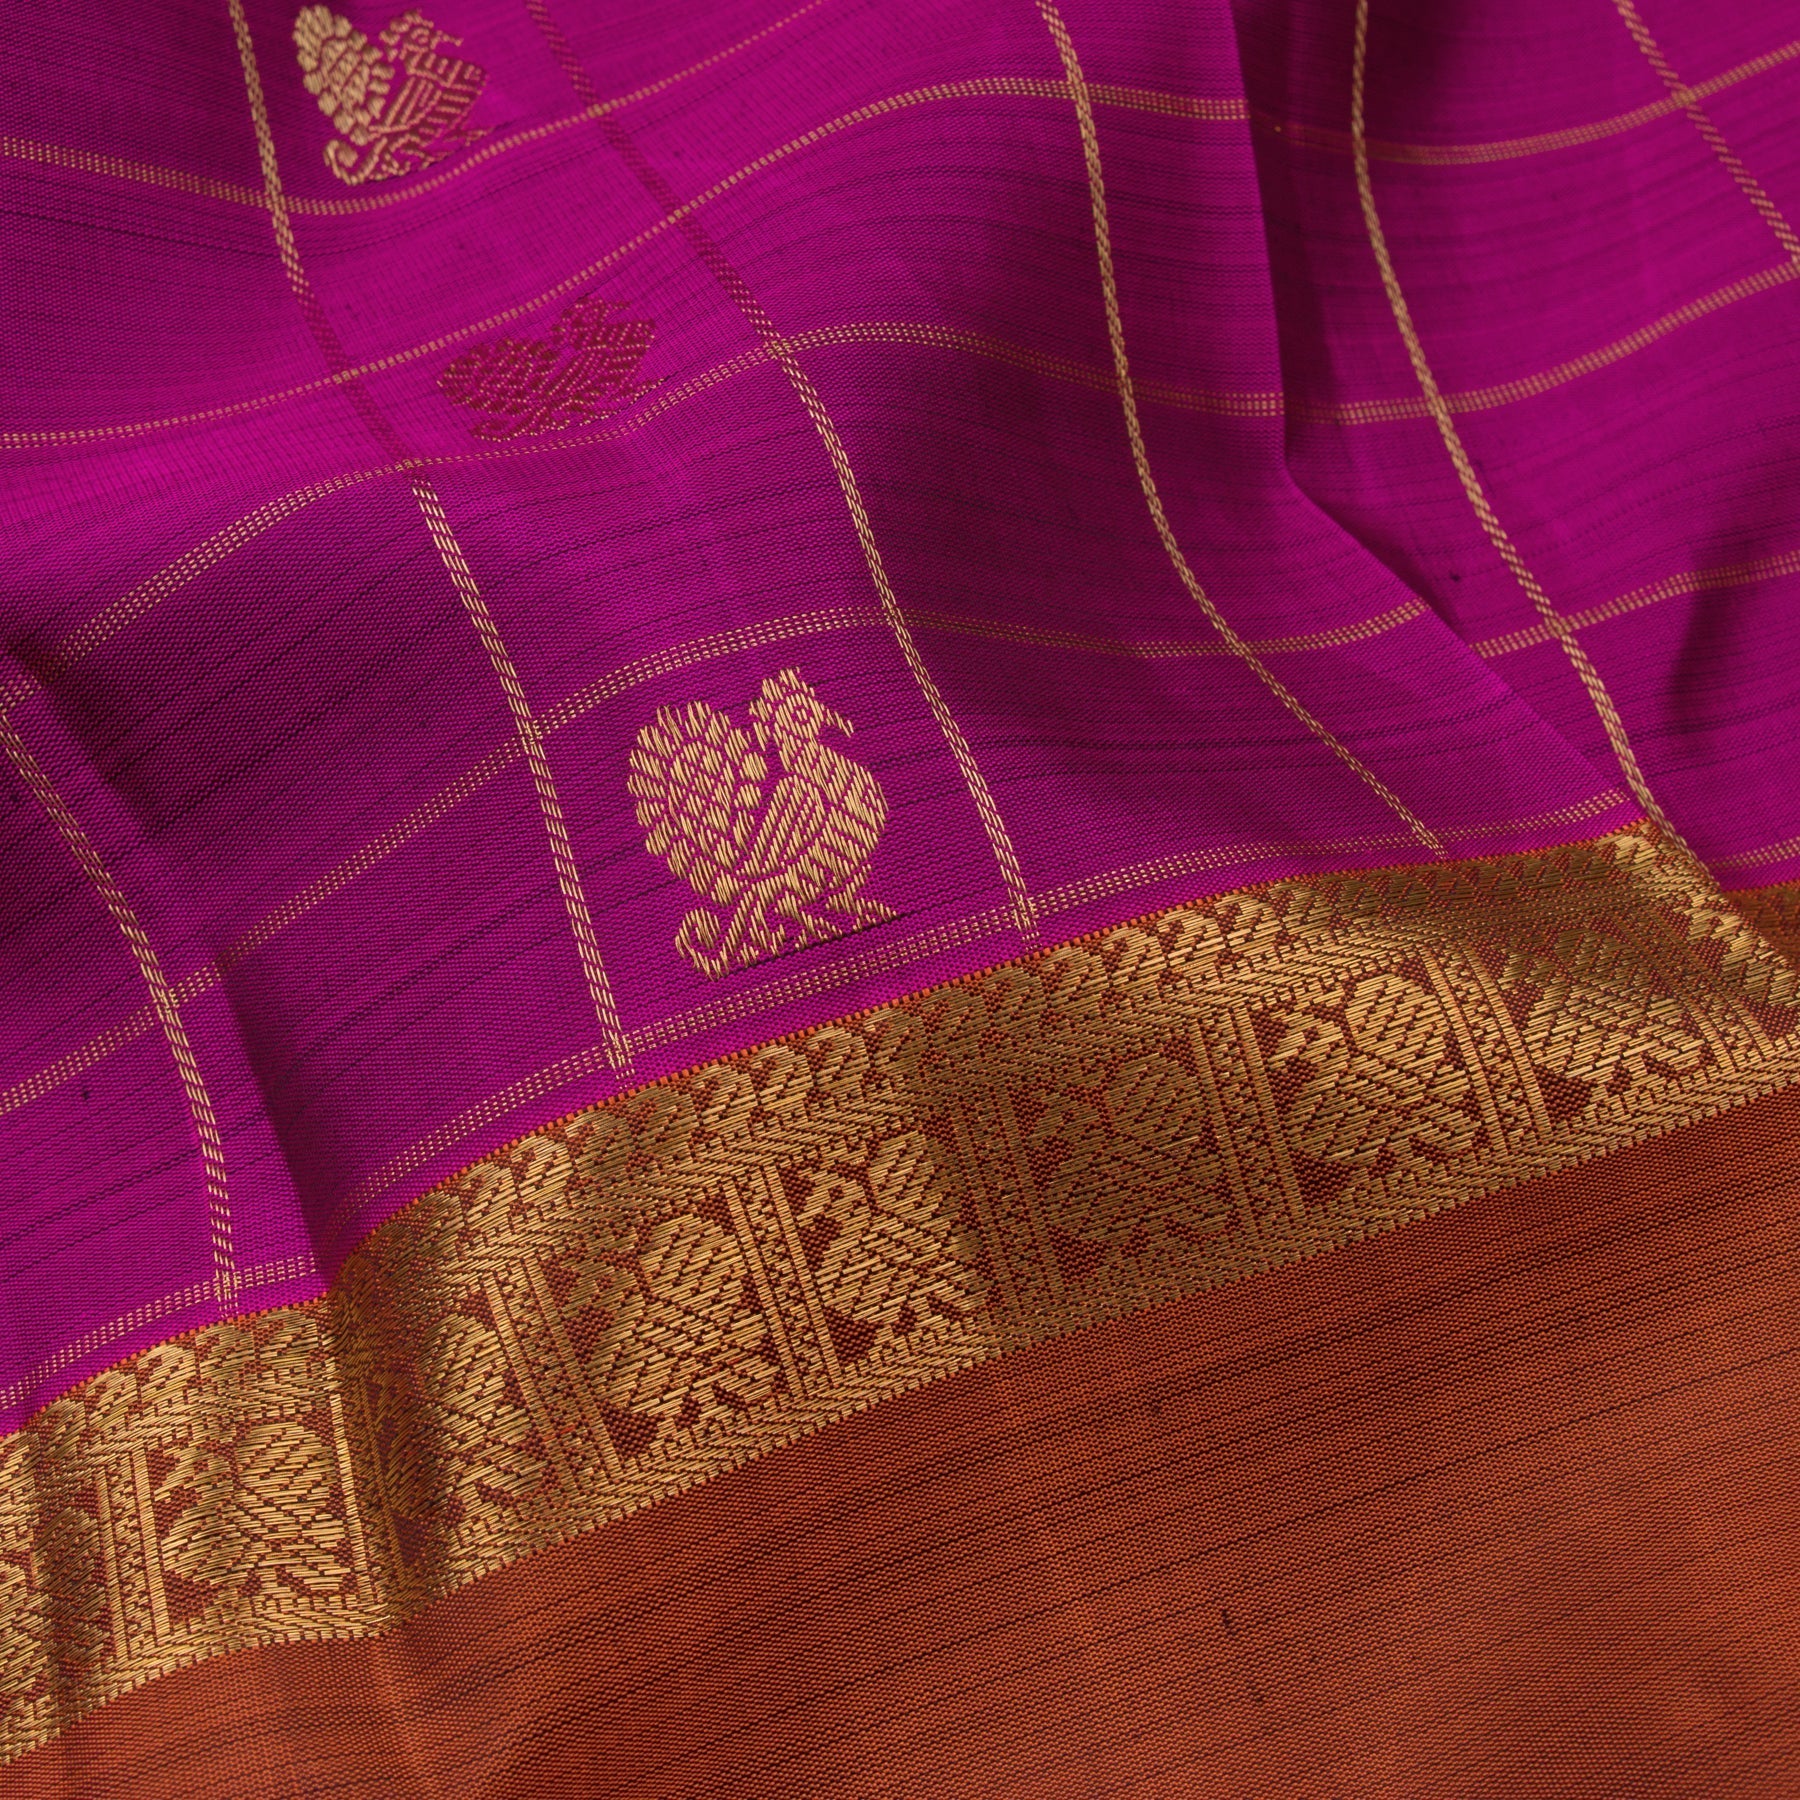 Kanakavalli Kanjivaram Silk Sari 22-595-HS001-04037 - Fabric View